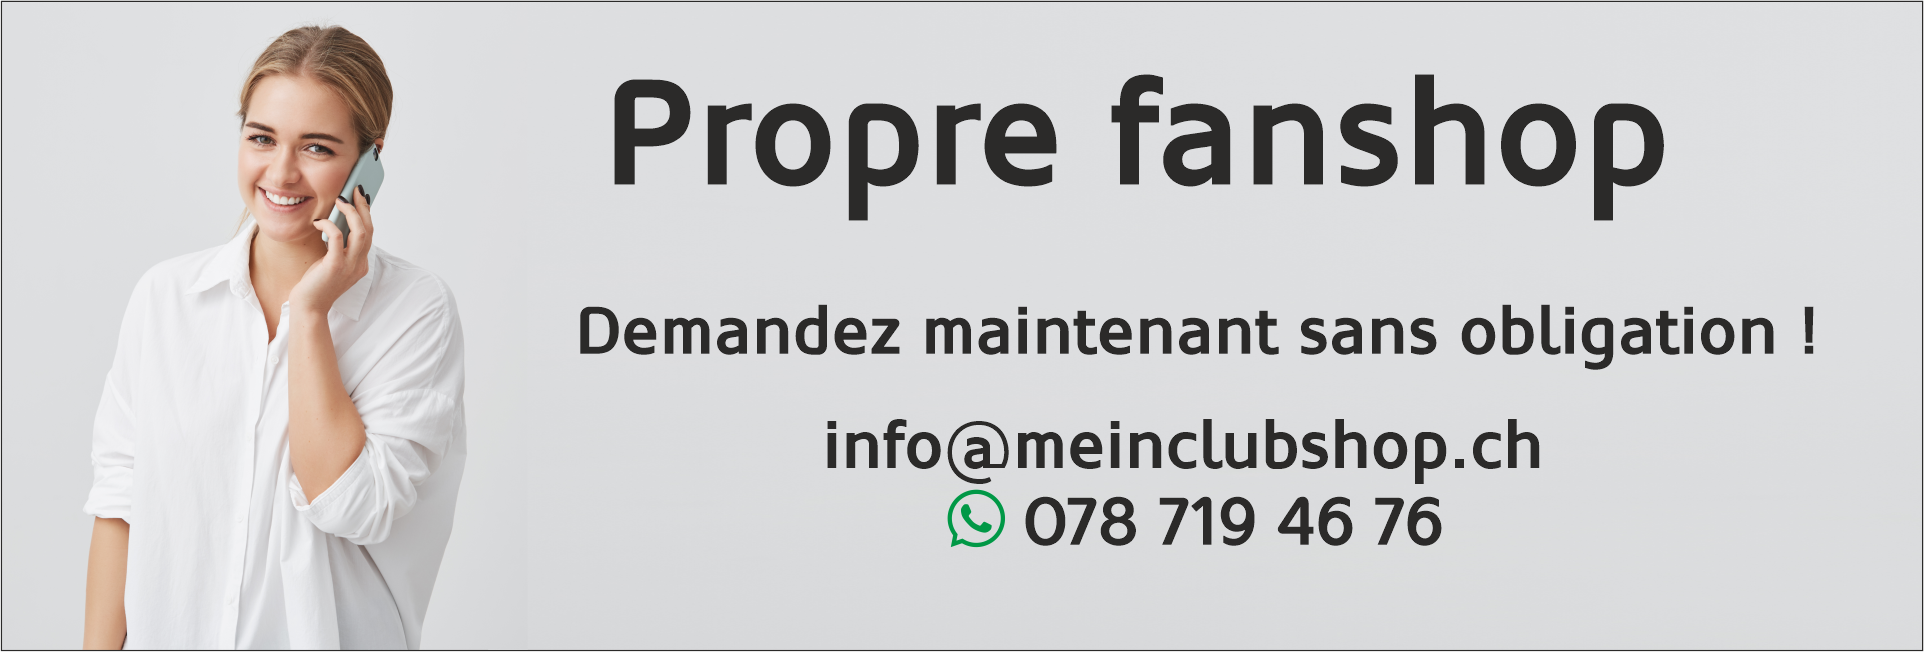 meinclubshop.ch - Fanshop en ligne pour tous les clubs !